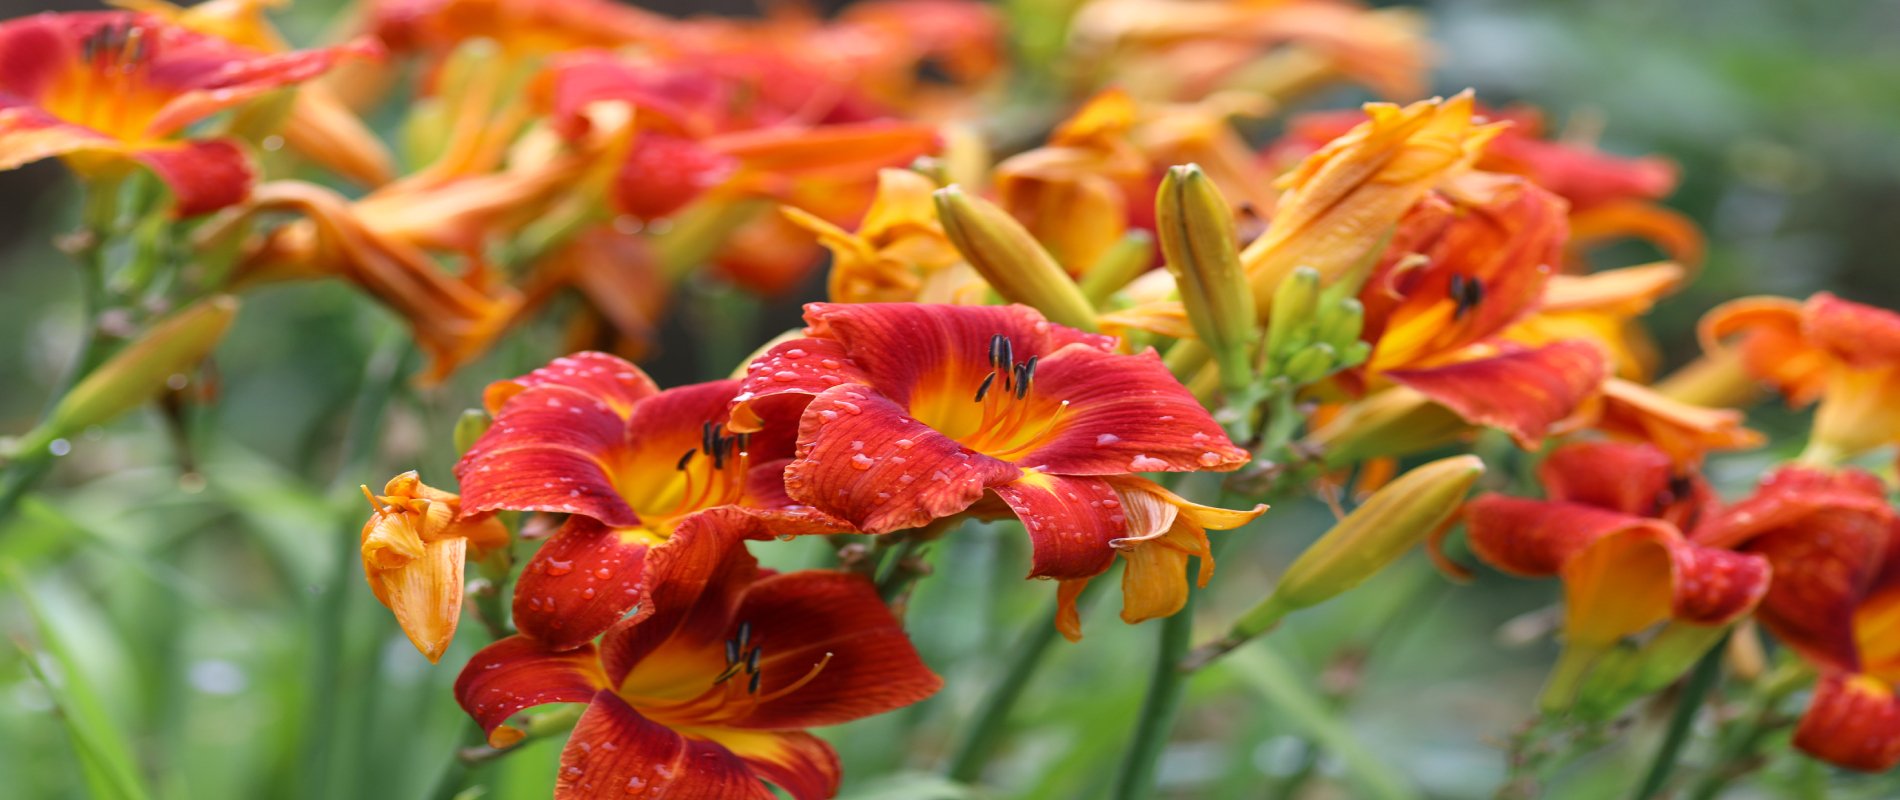 liliowiec kwiat wieloletni